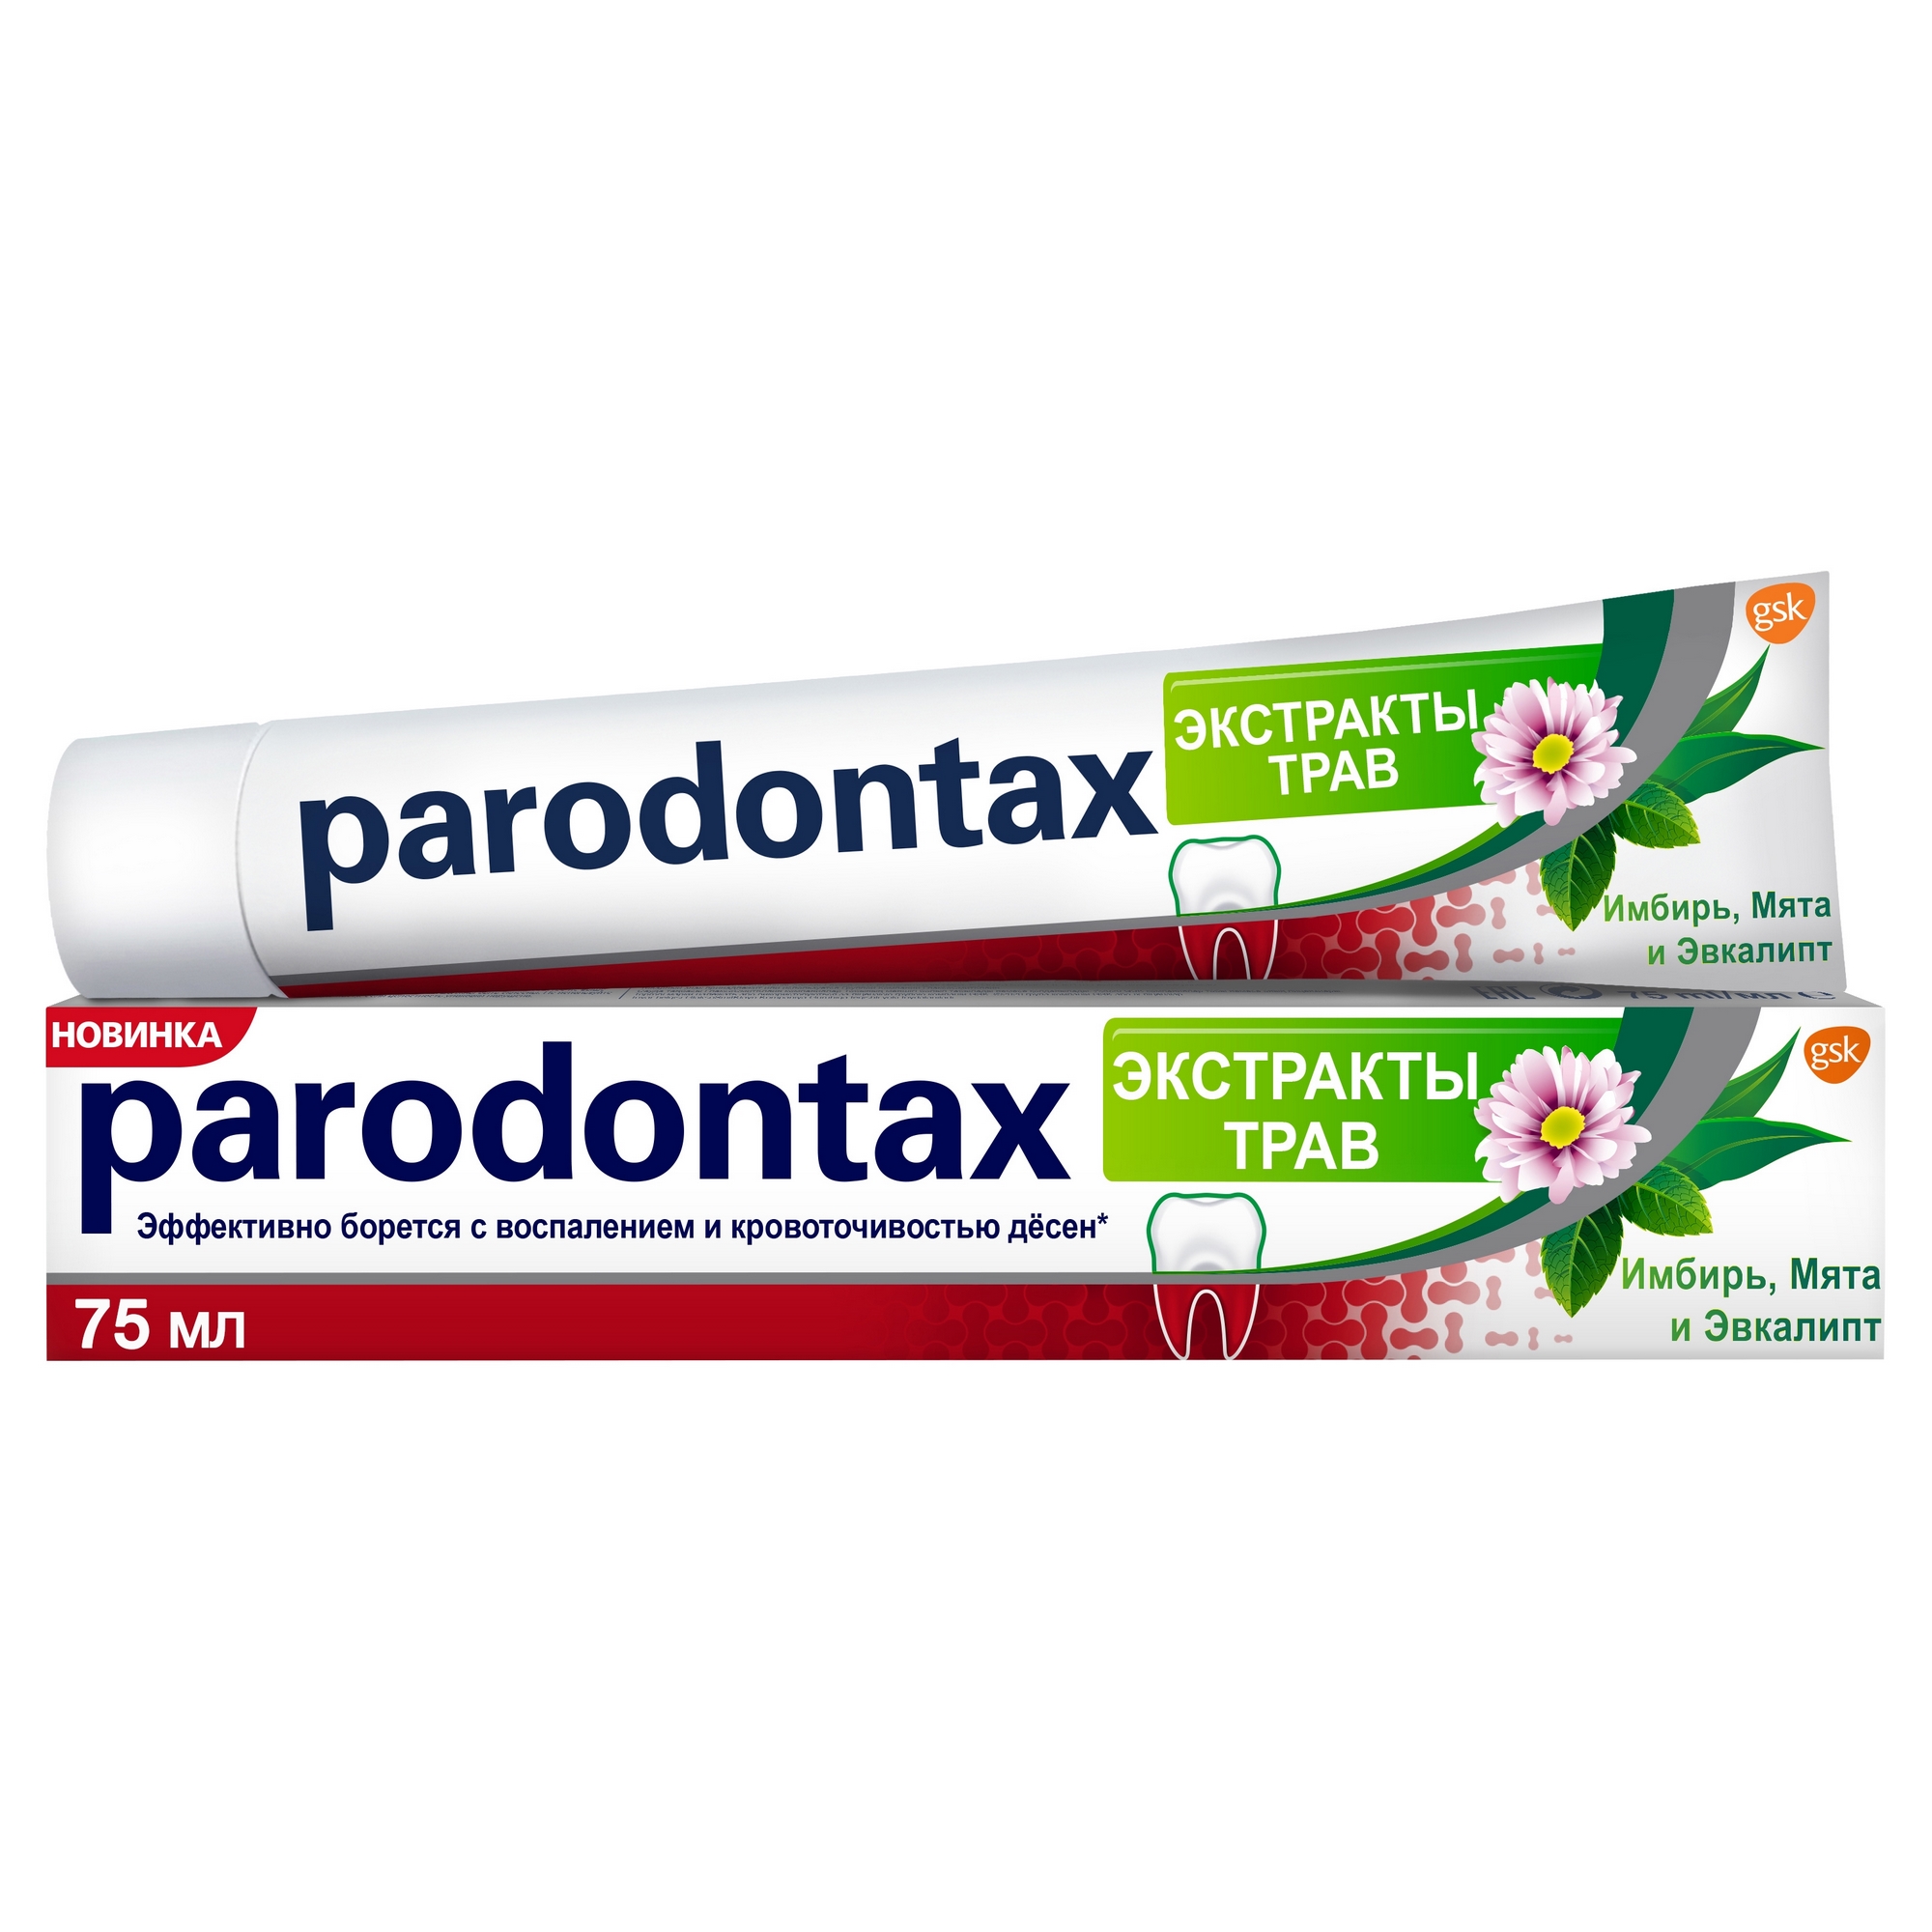 Зубная паста Parodontax Экстракты трав 75 мл зубная паста parodontax травы 75 мл